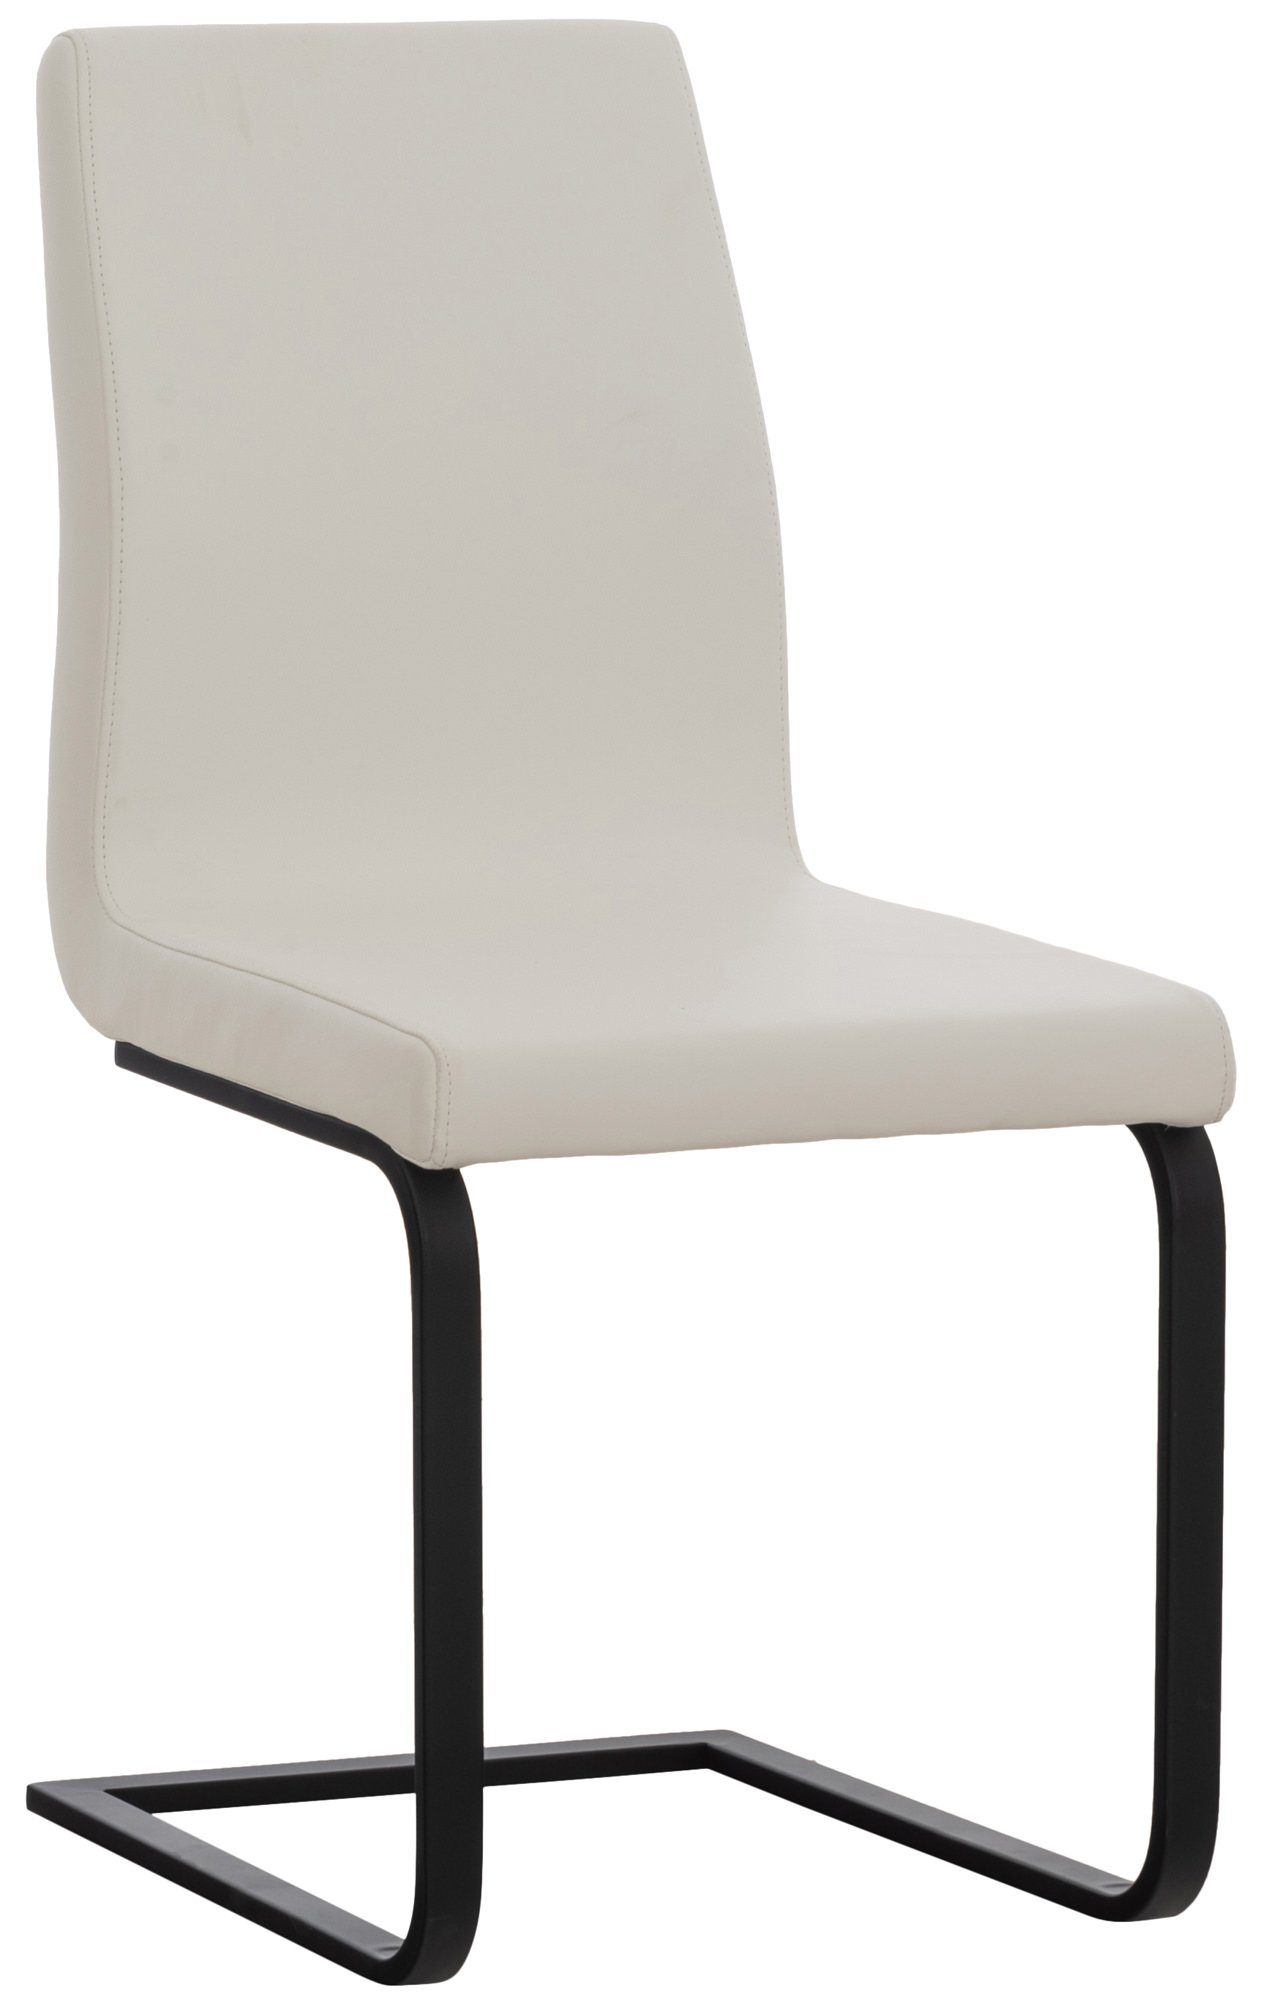 TPFLiving Esszimmerstuhl Bellle mit hochwertig gepolsterter Sitzfläche - Konferenzstuhl (Küchenstuhl - Wohnzimmerstuhl - Freischwinger), Gestell: Metall matt schwarz - Sitzfläche: Kunstleder weiß